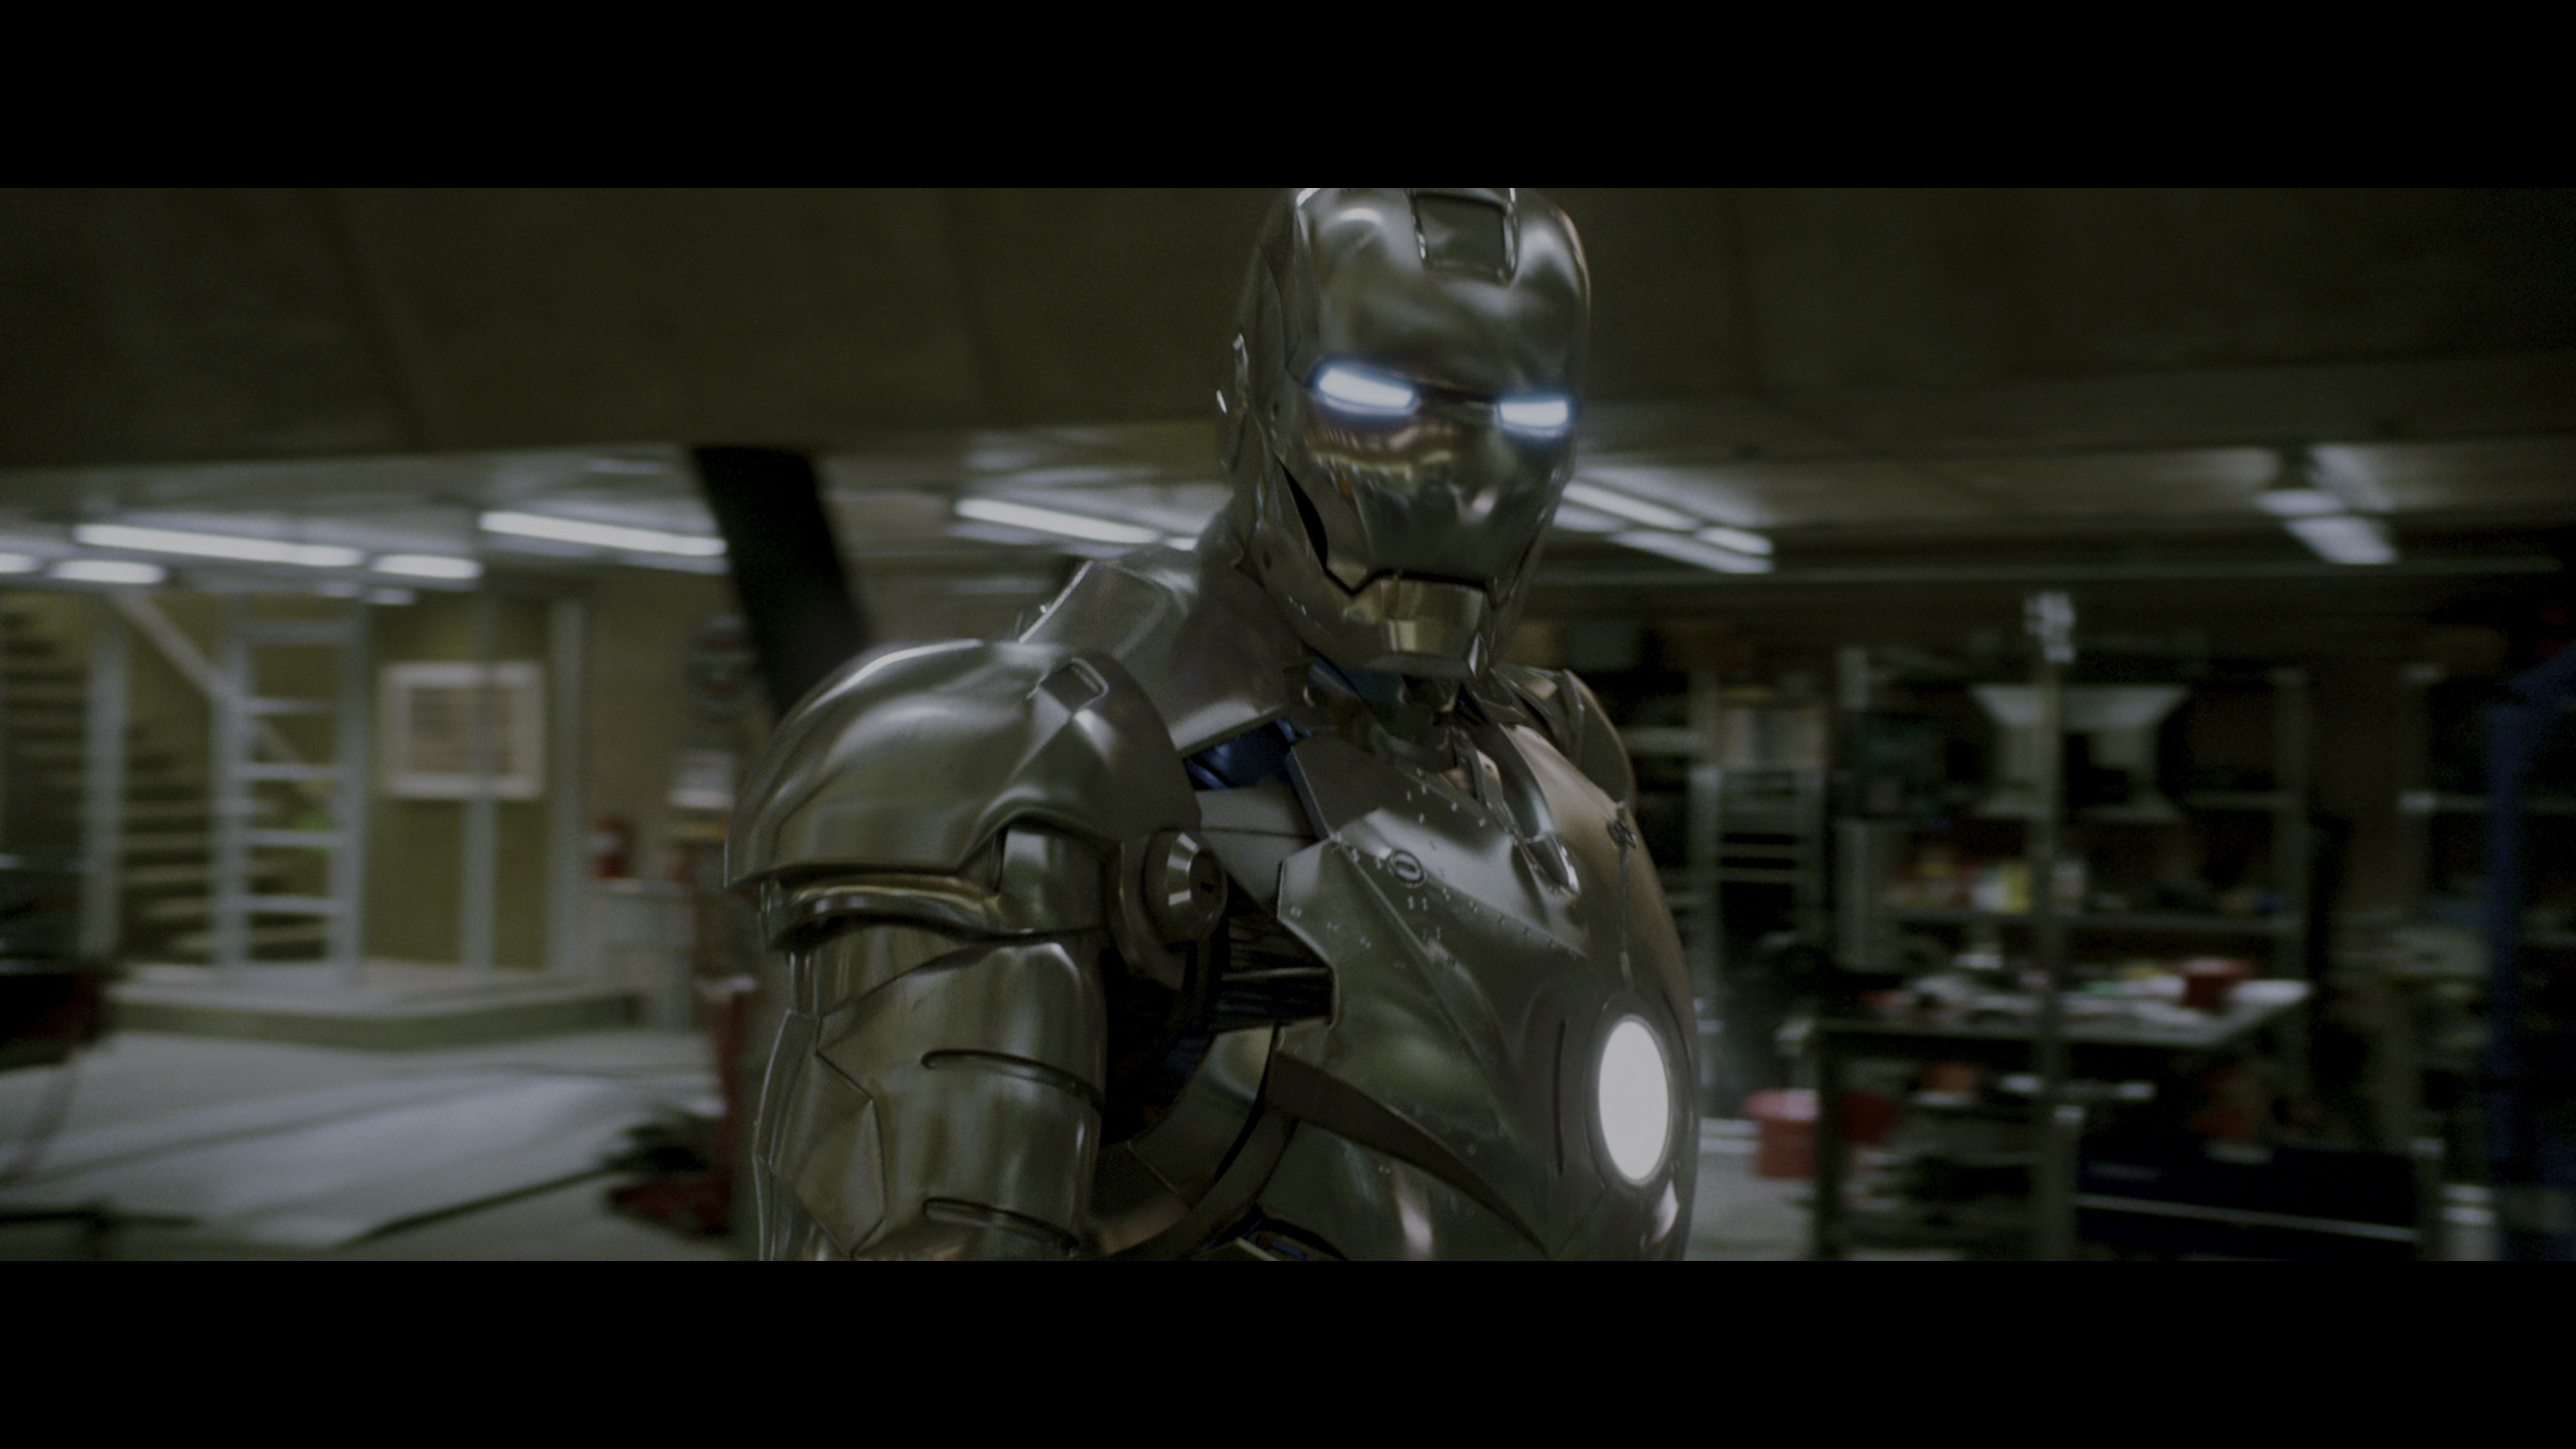 Iron man - El hombre de hierro 2008 720p BRrip - DescargatePelis.com